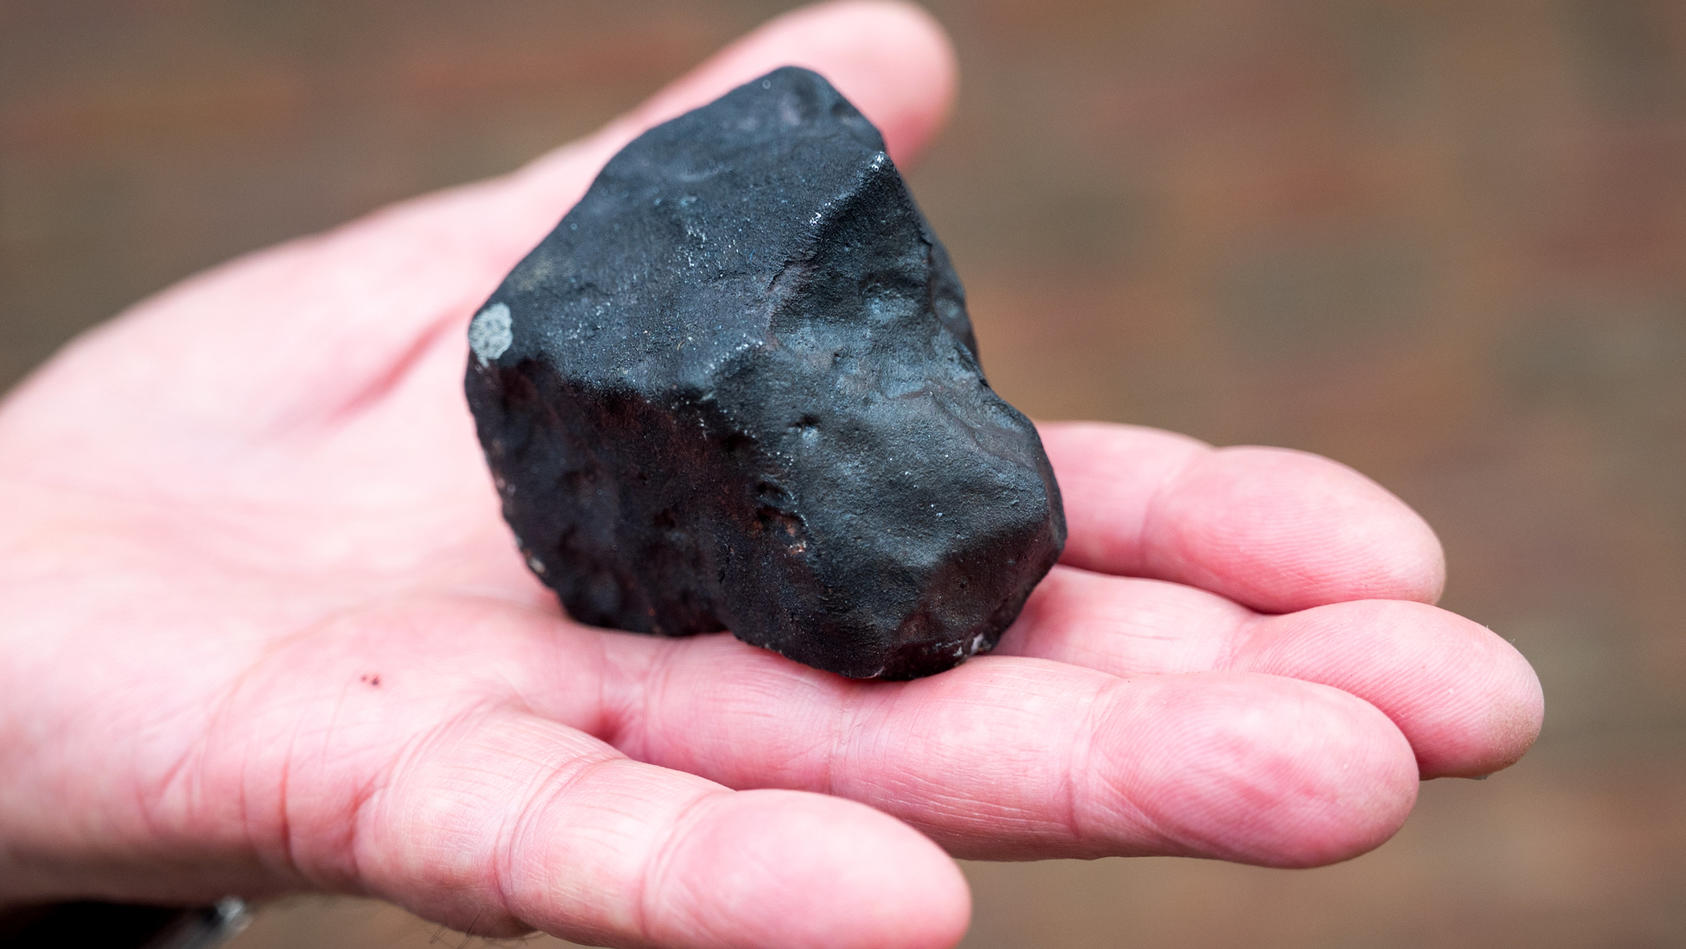 in-elmshorn-schleswig-holstein-regnete-es-ende-april-meteoriten-eine-familie-konnte-deshalb-jetzt-reich-werden